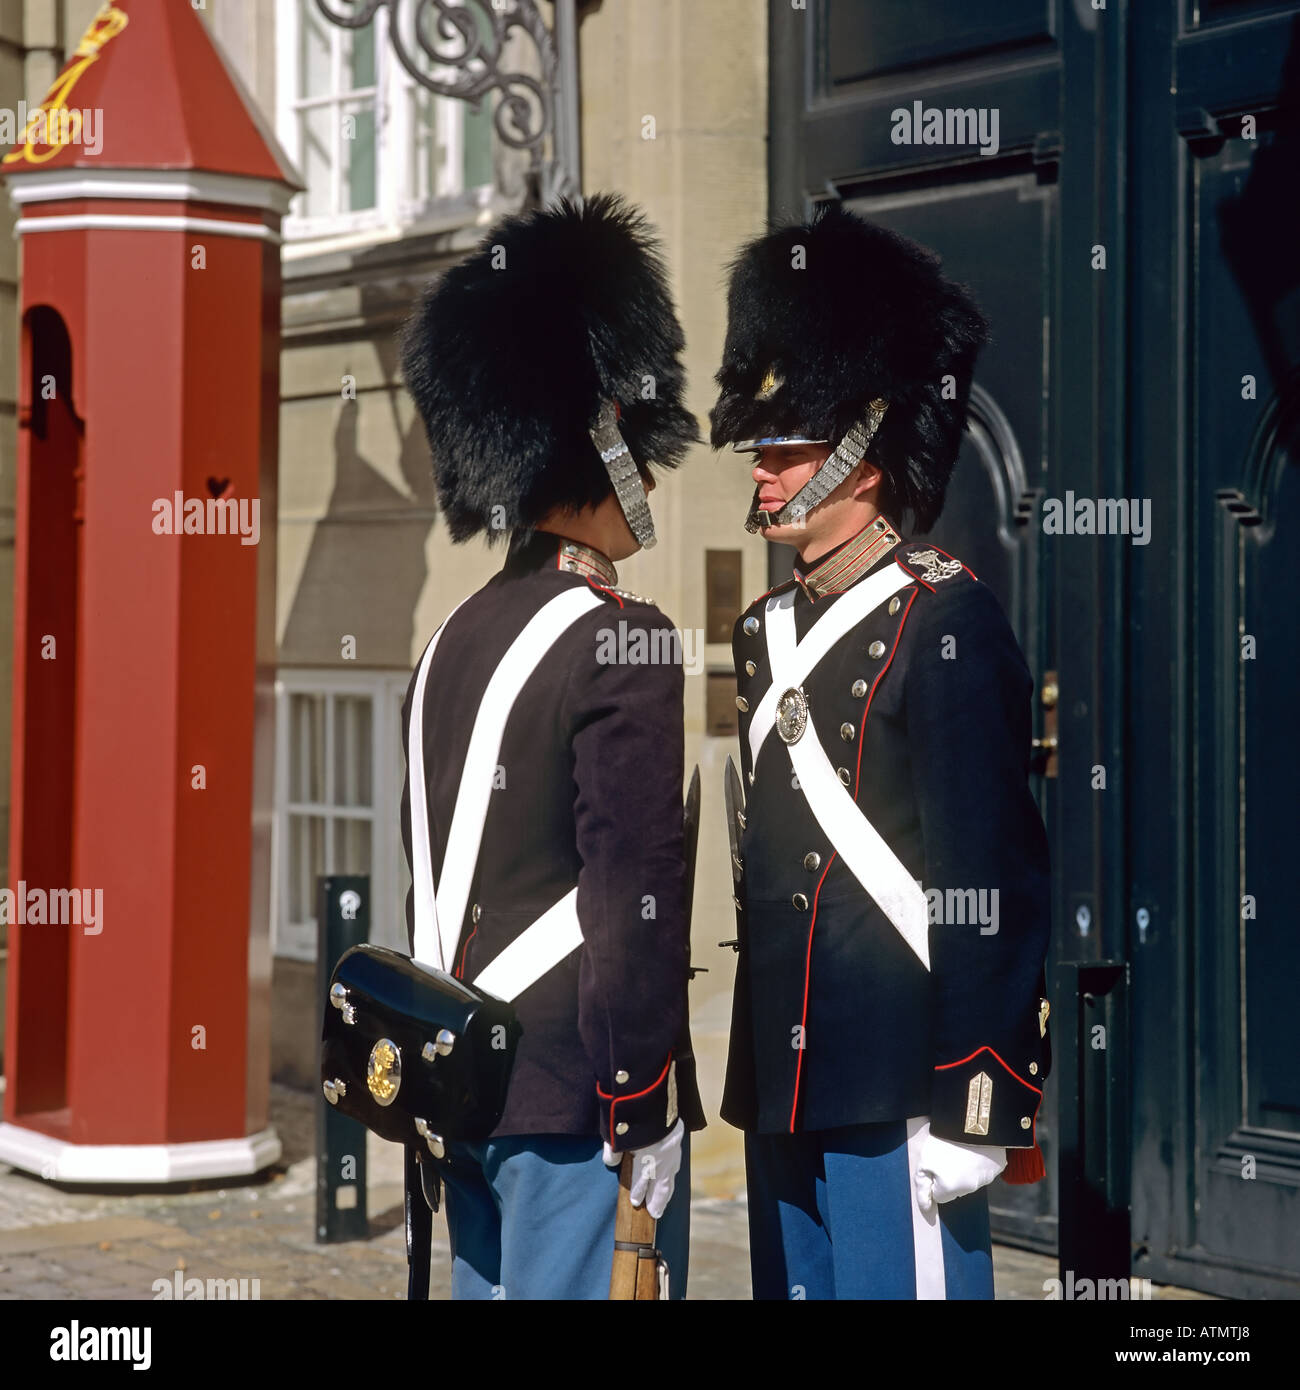 Royal life guards, Amalienborg palace, Copenhagen, Denmark Stock Photo